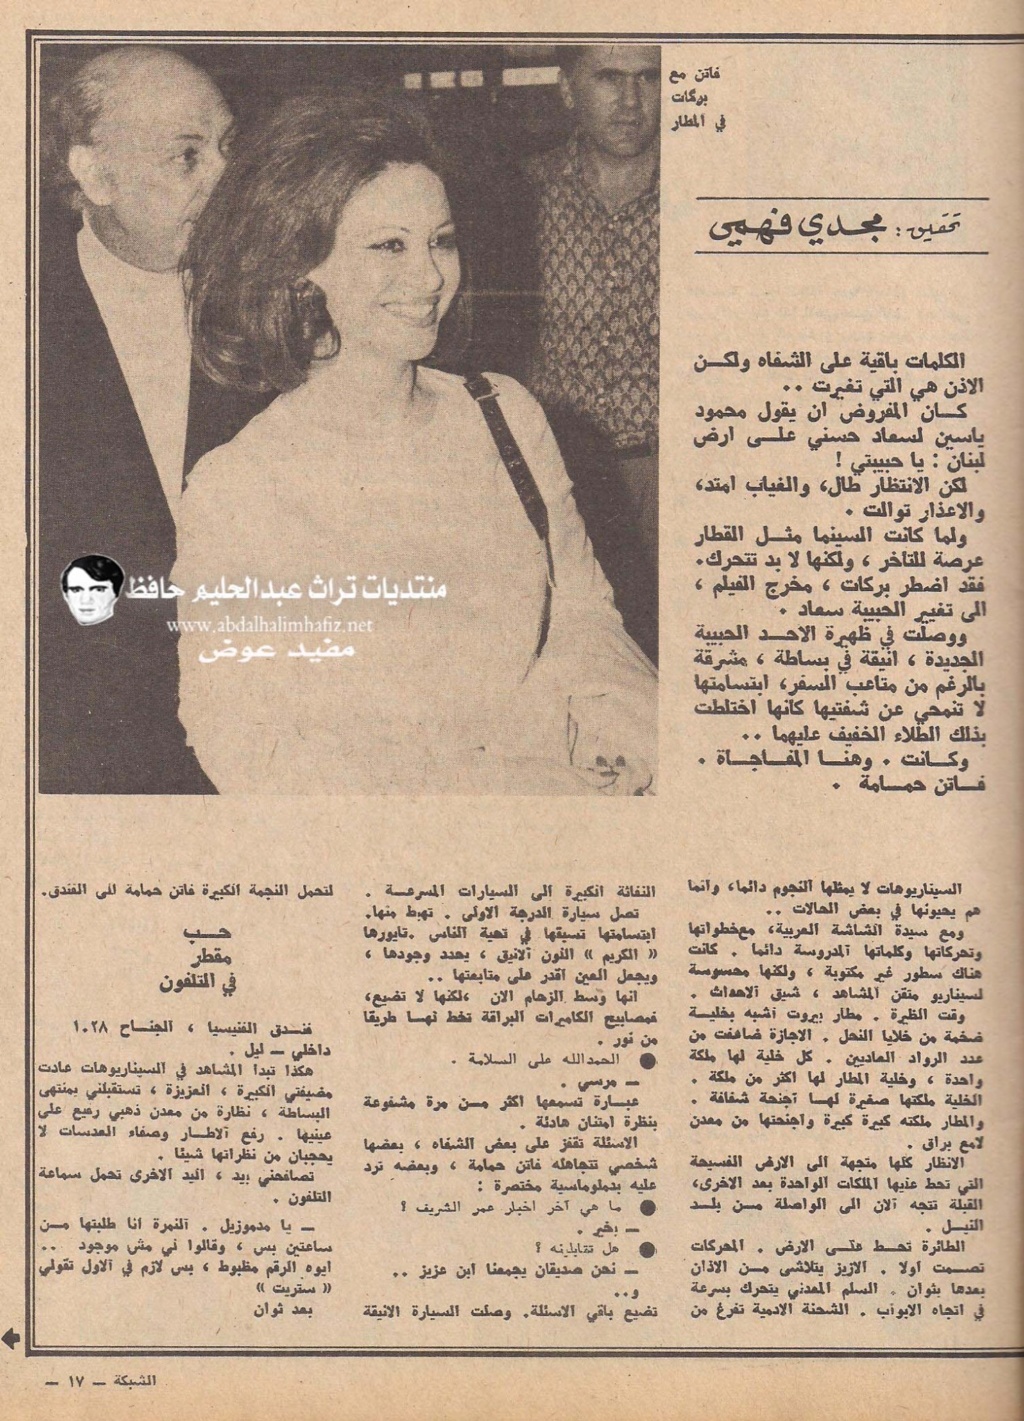 صحفي - مقال صحفي : فاتن حمامة حبيبة في لبنان بدلا من سعاد حسني 1972 م 2174